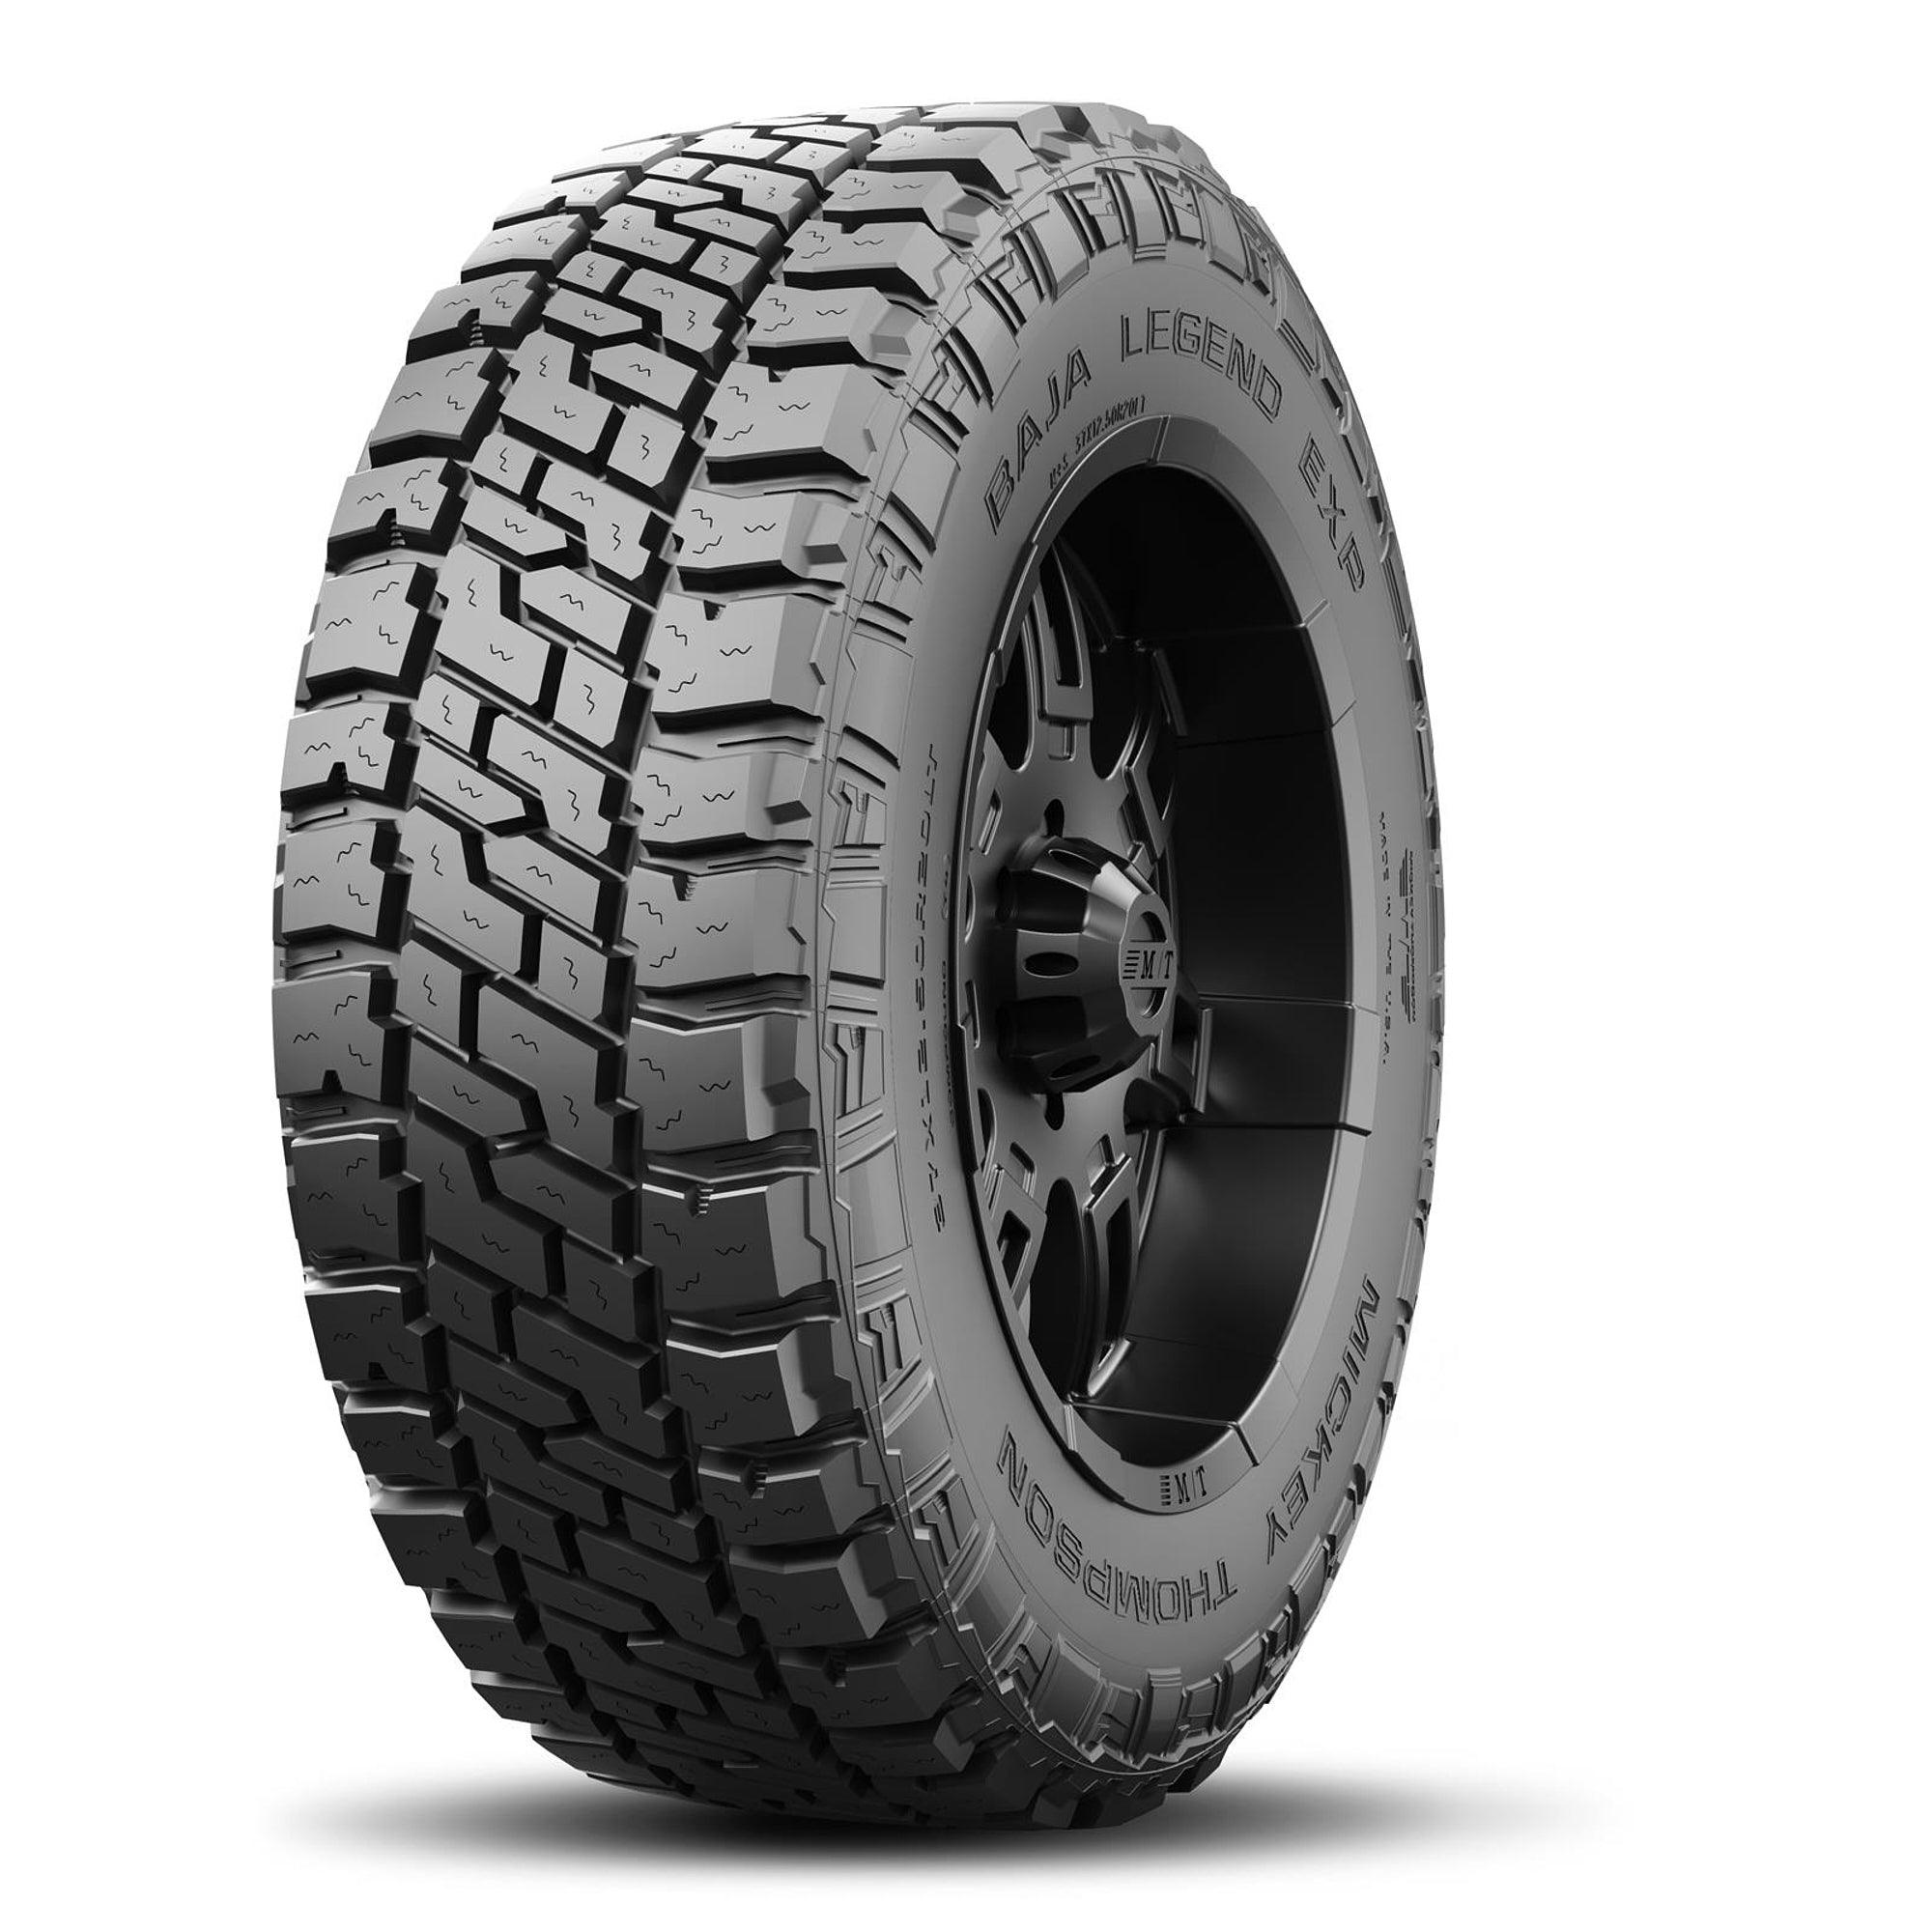 Baja Legend EXP Tire LT265/60R18 119/116Q - Burlile Performance Products